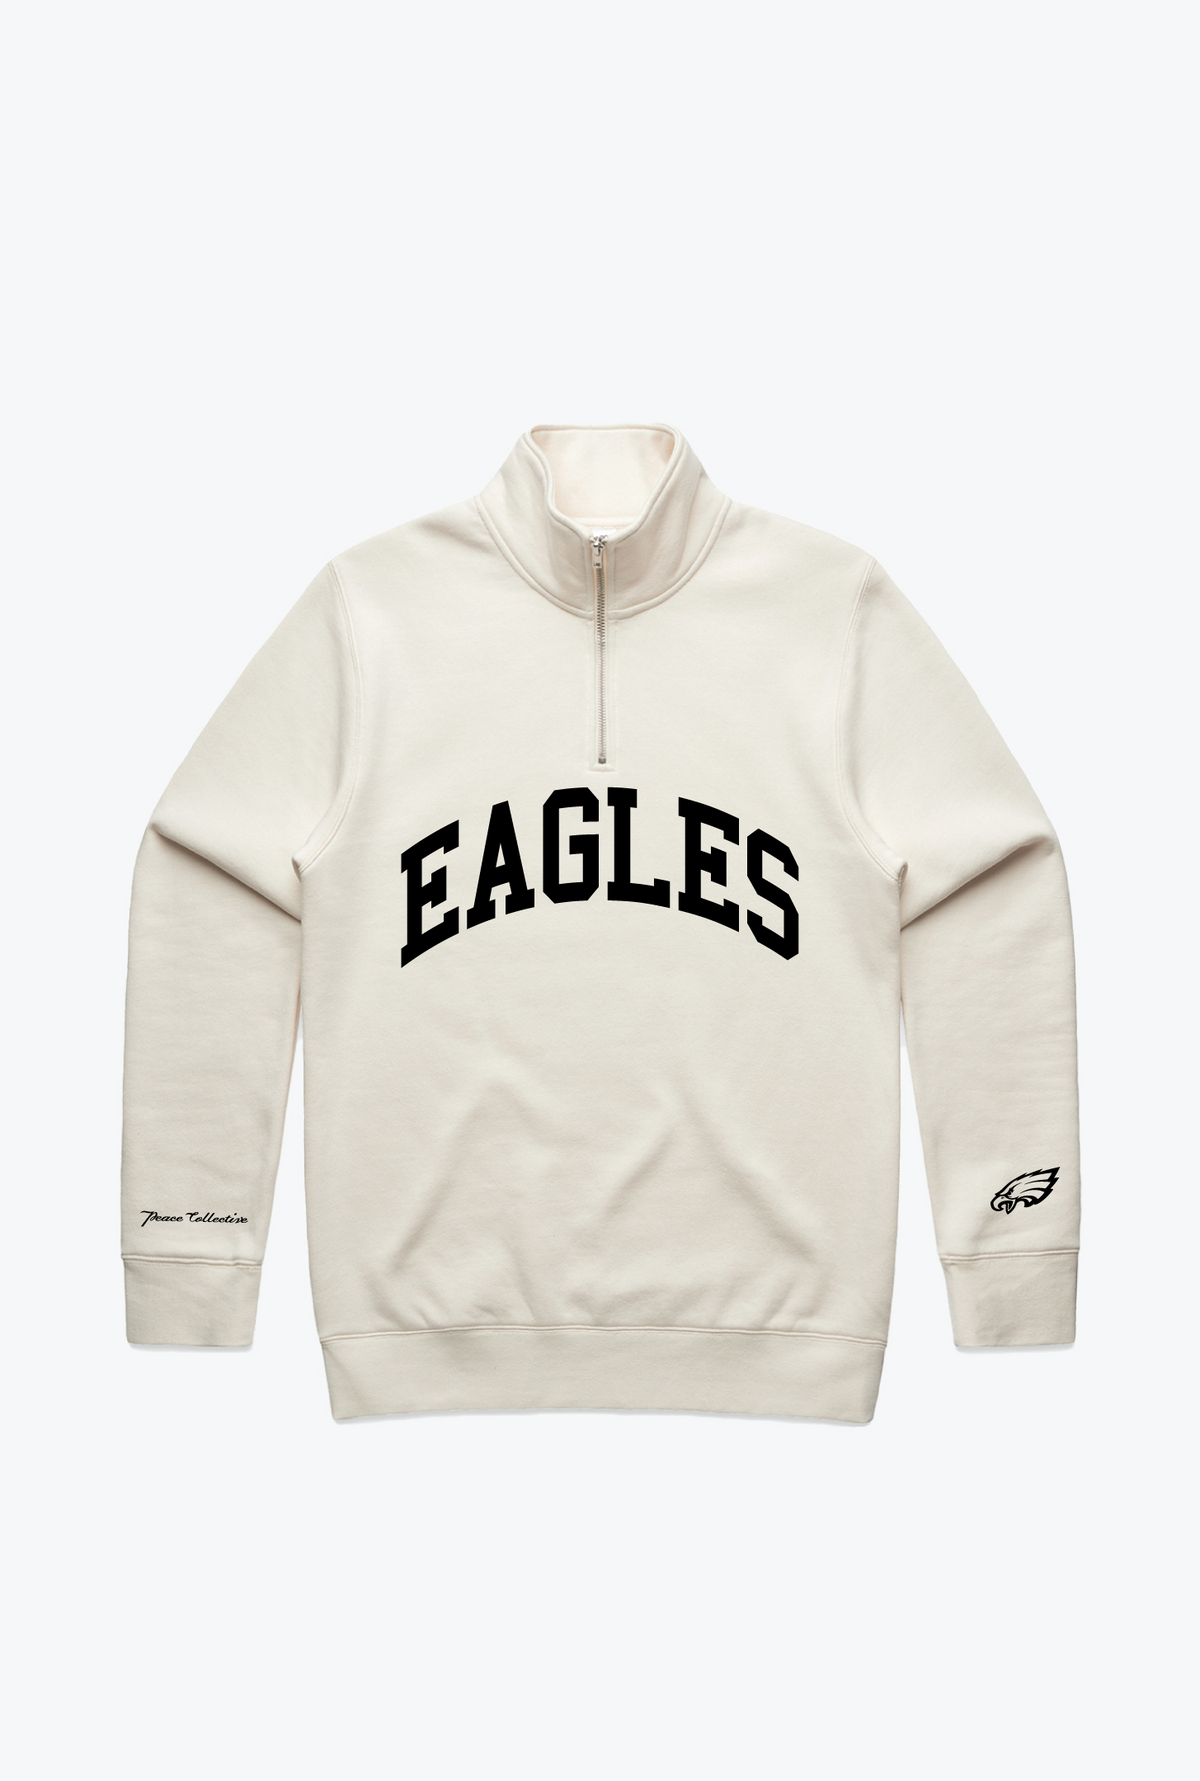 Philadelphia Eagles Collegiate Quarter Zip - Ivory